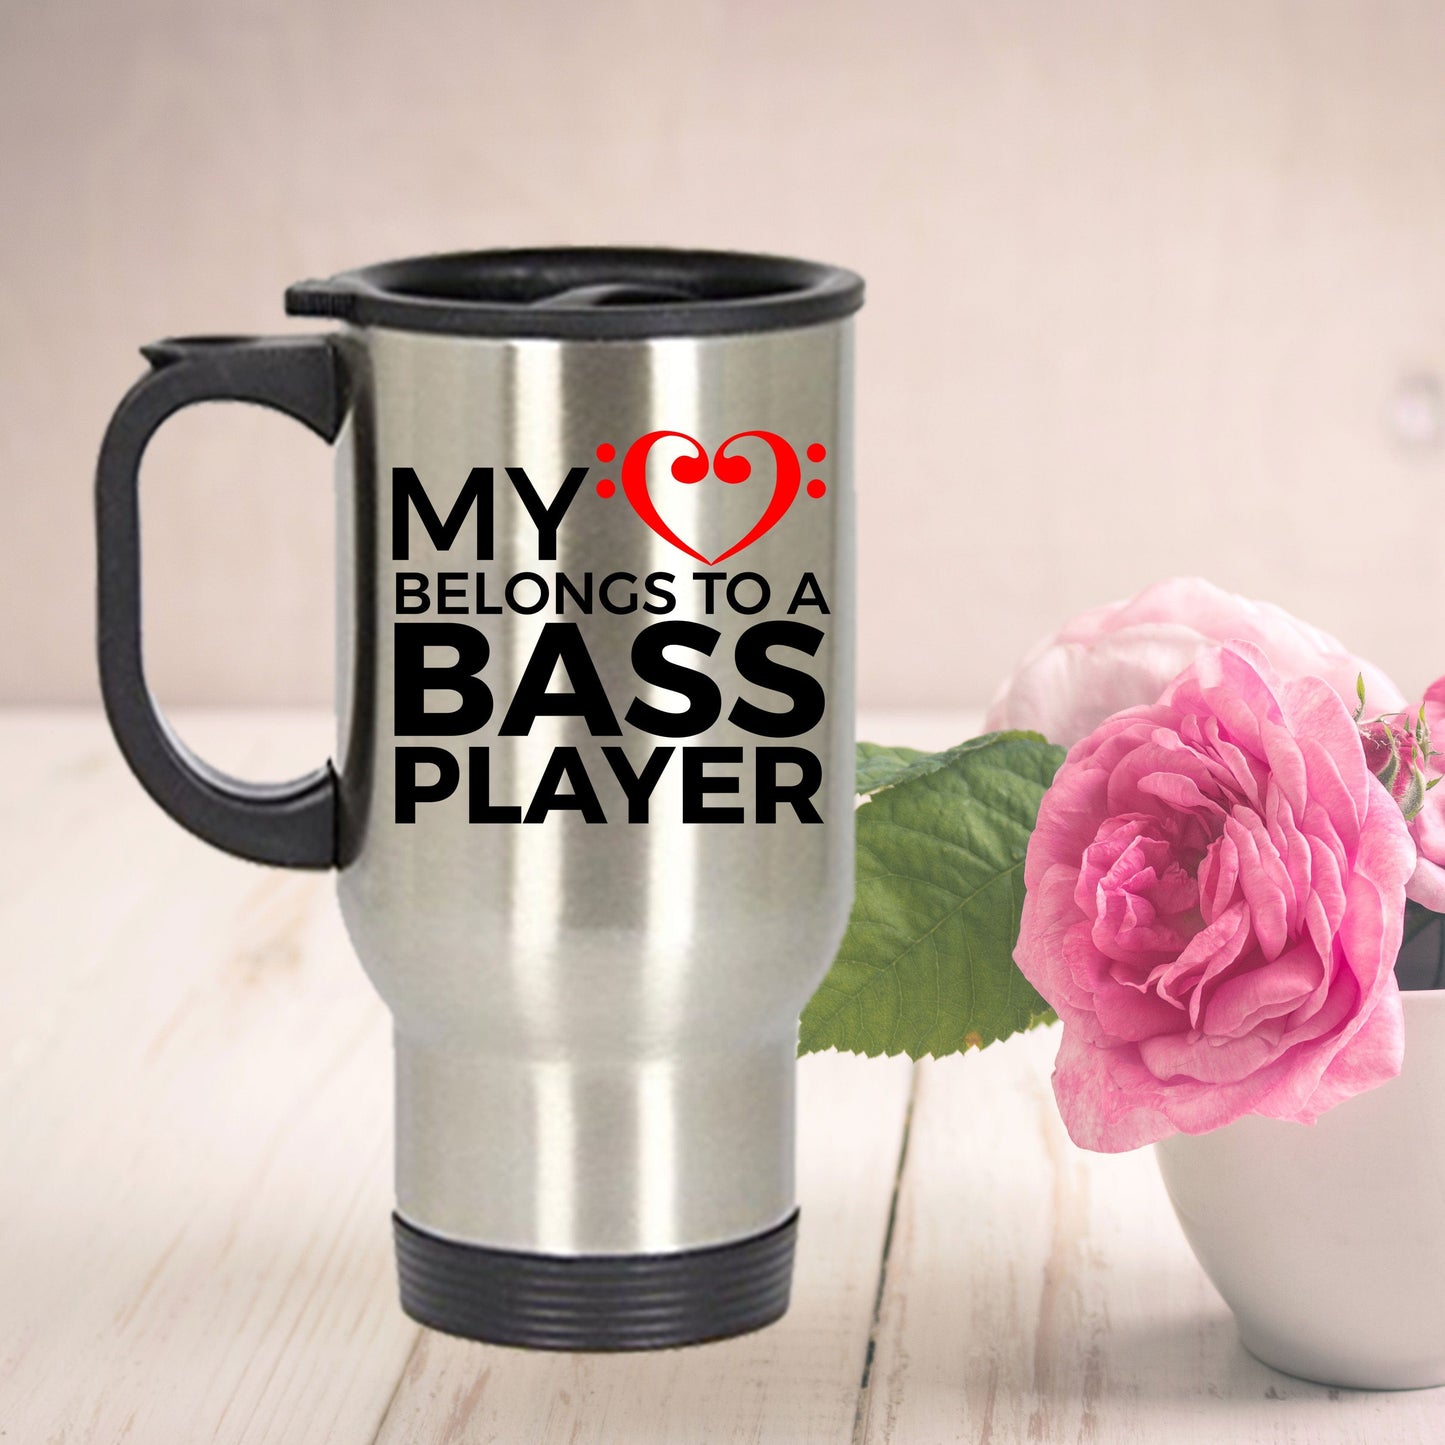 Bass Player Travel Mug - My Heart Belongs to a Bass Player